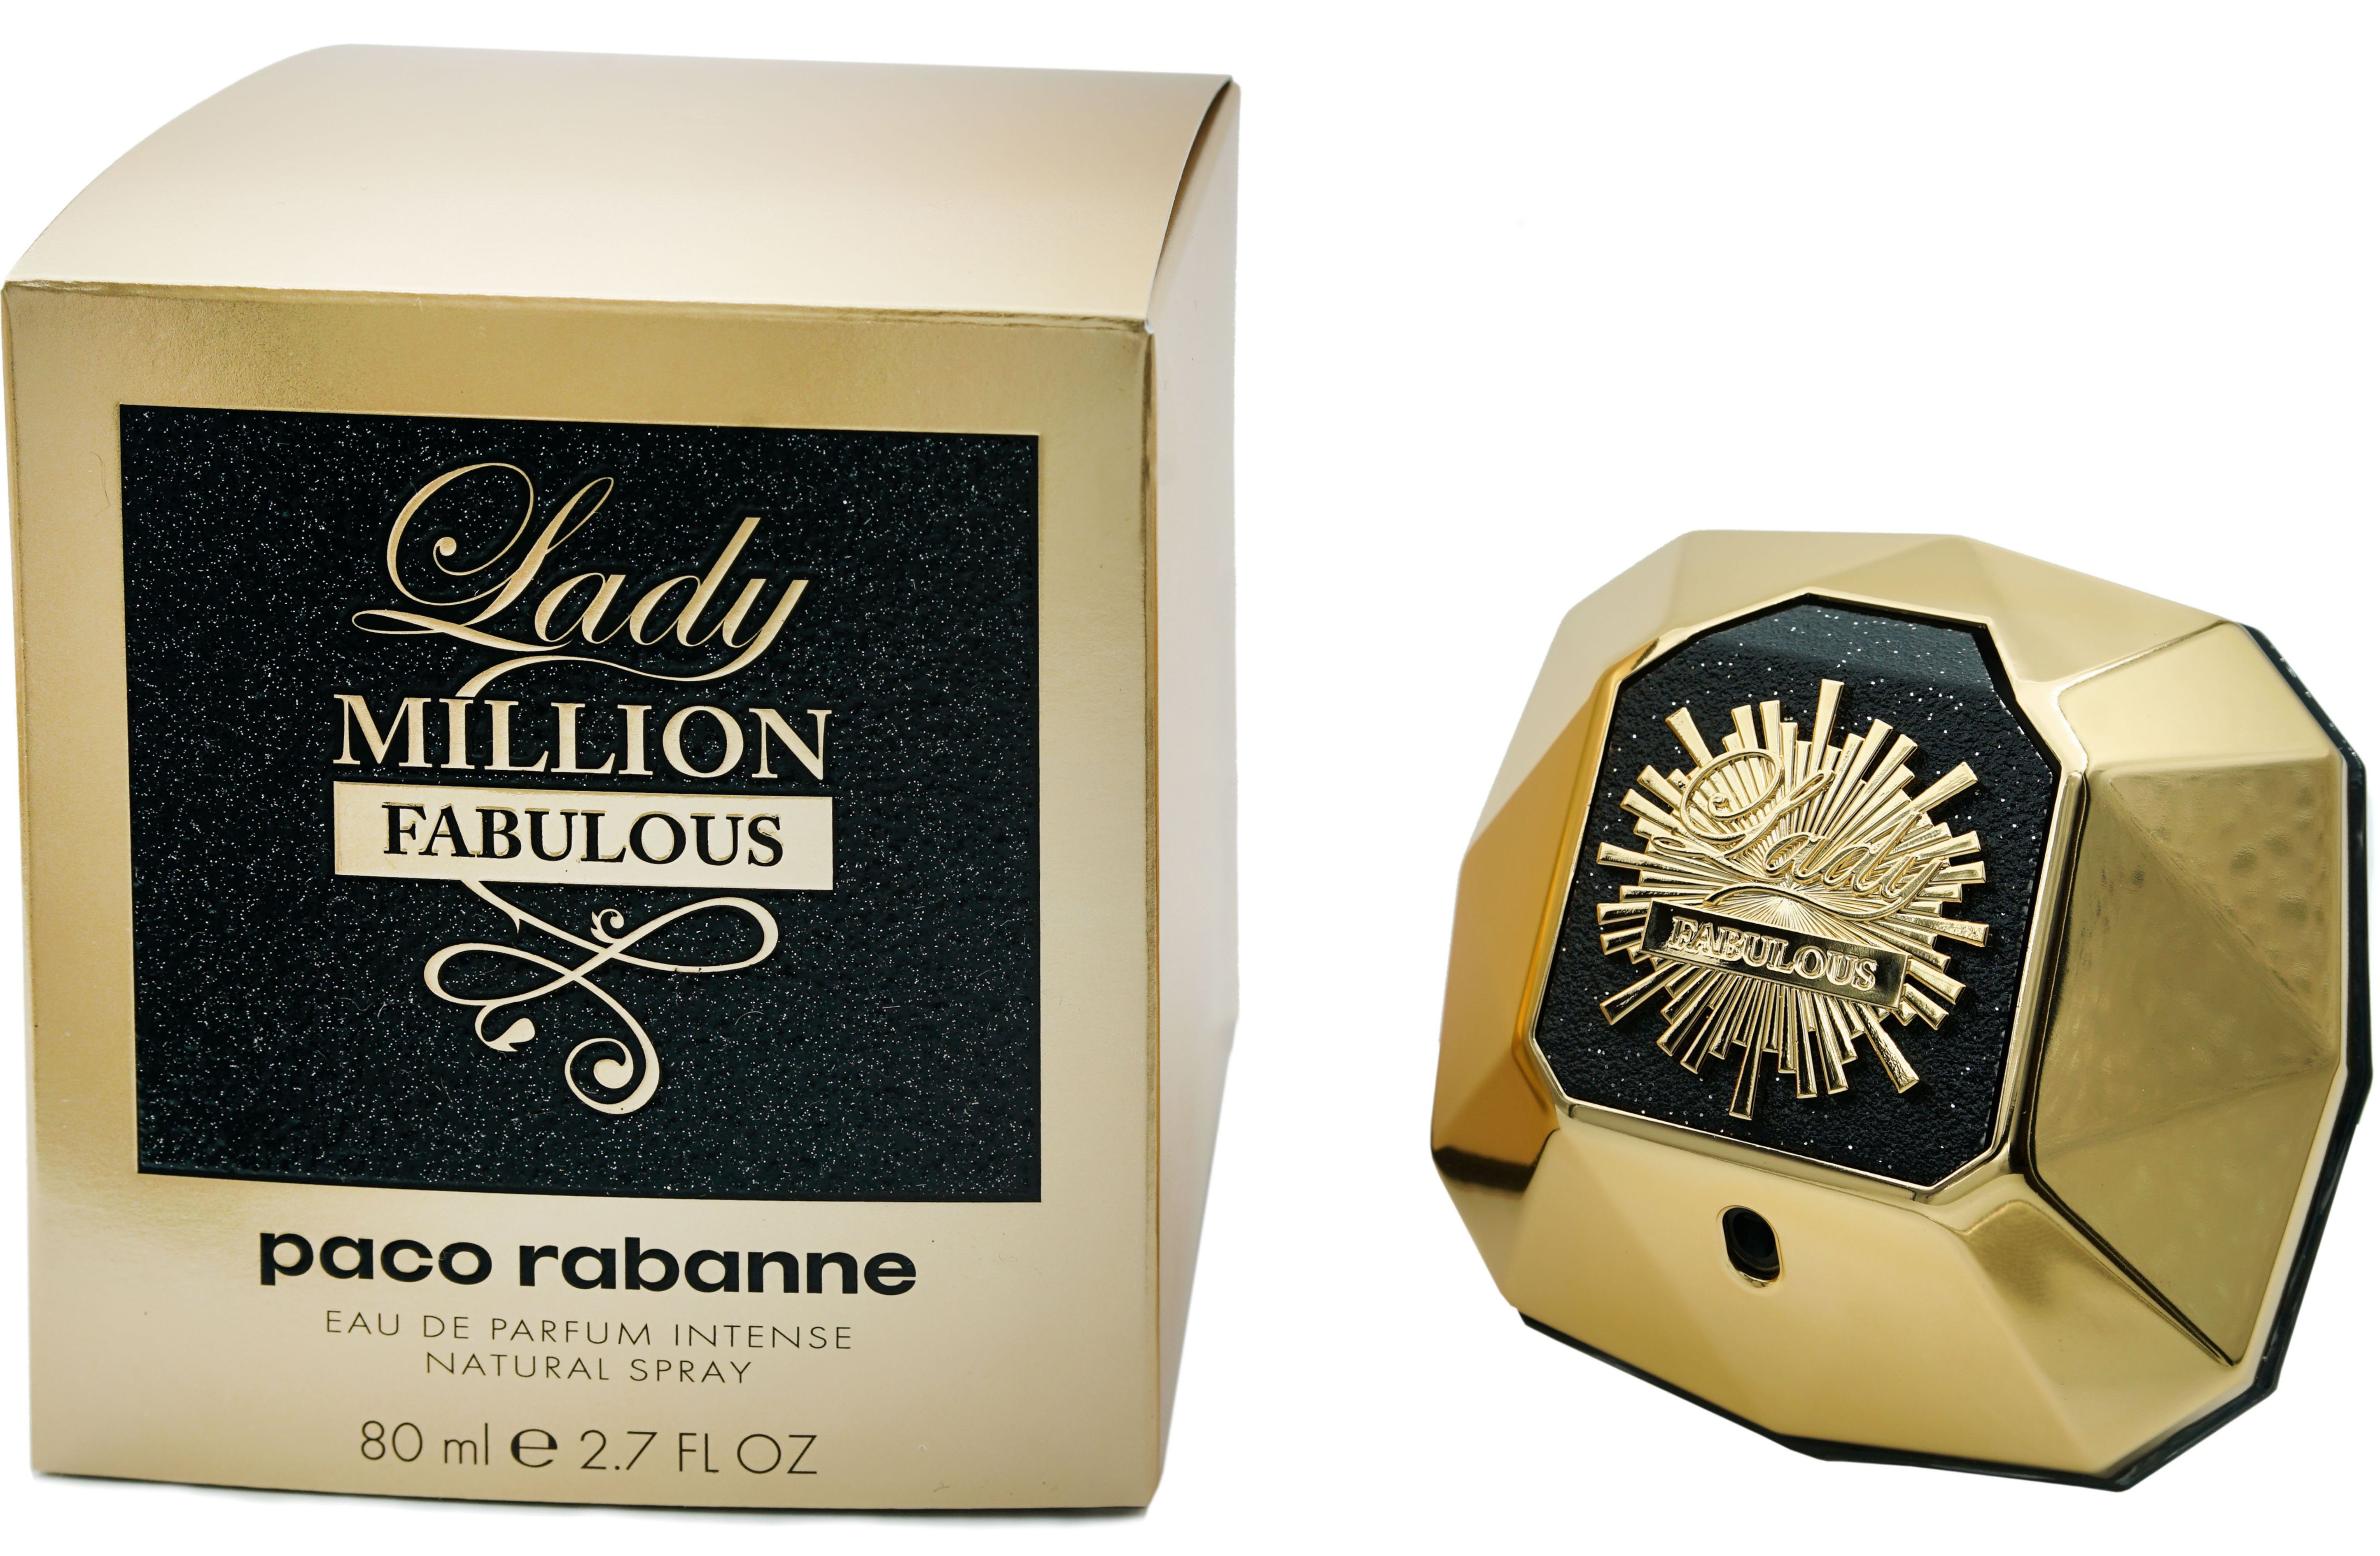 Parfum de Lady Million Fabulous paco Eau rabanne